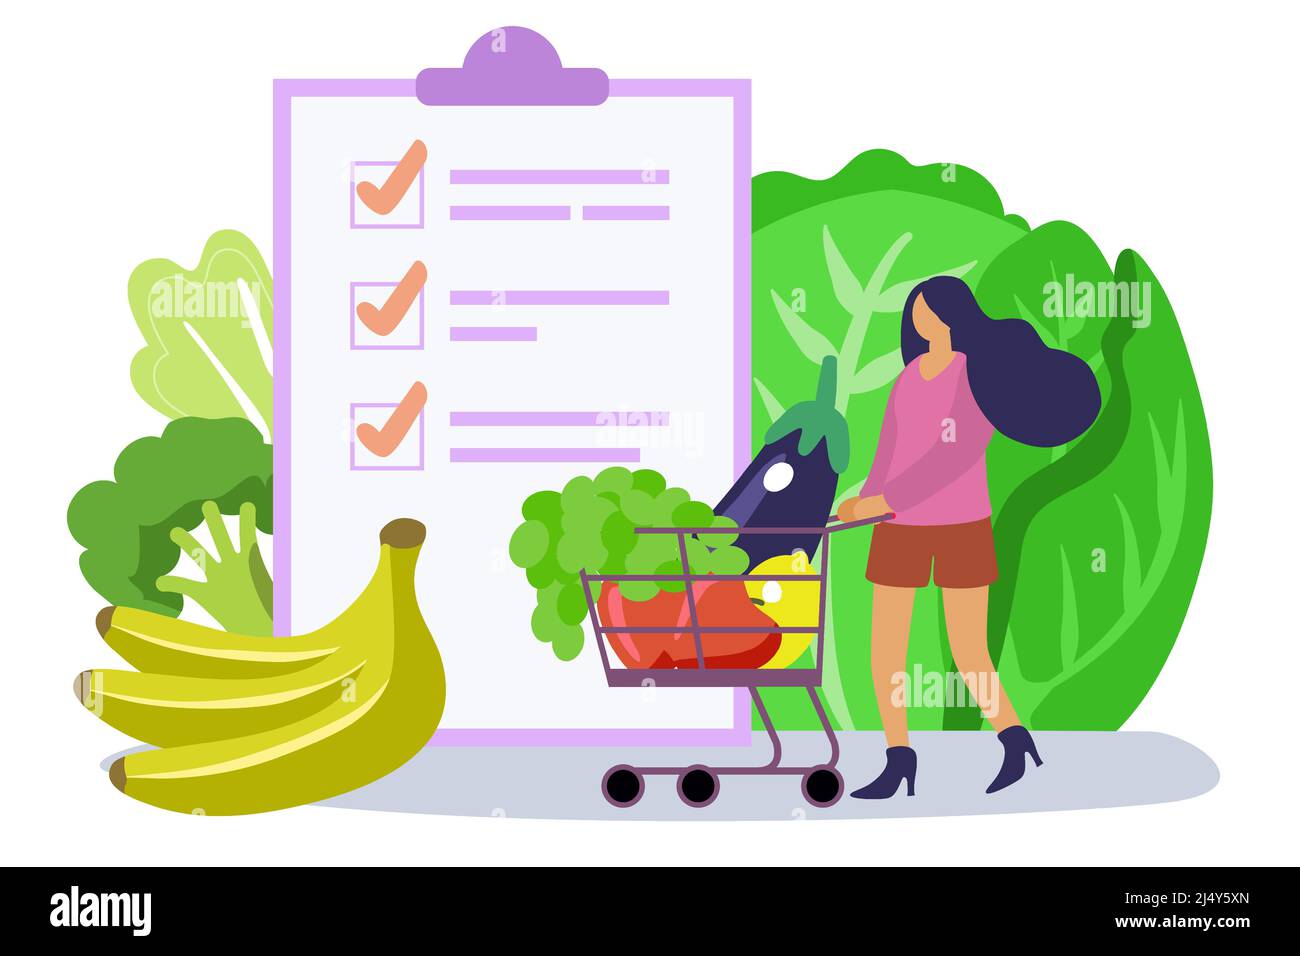 Mujer que elige la lista de alimentos saludables concepto de vector plano ilustración completa carrito de la compra y la persona plana diminuta comer comidas equilibradas con vitaminas verdes, Ilustración del Vector